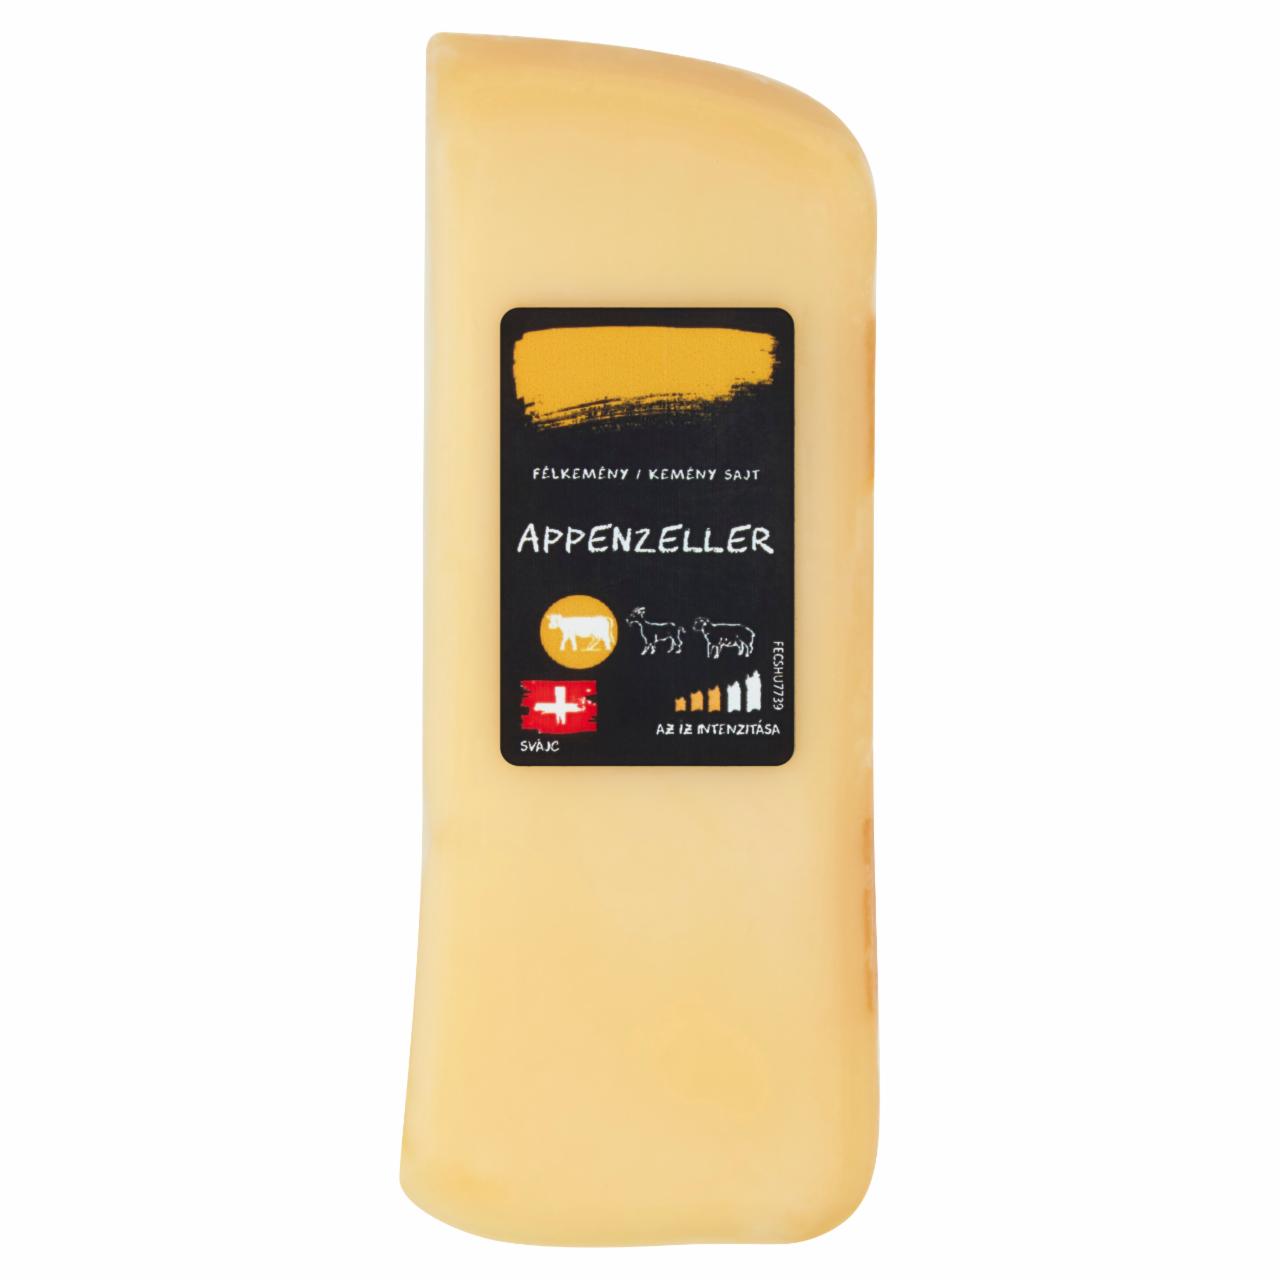 Képek - Appenzeller félkemény/kemény sajt